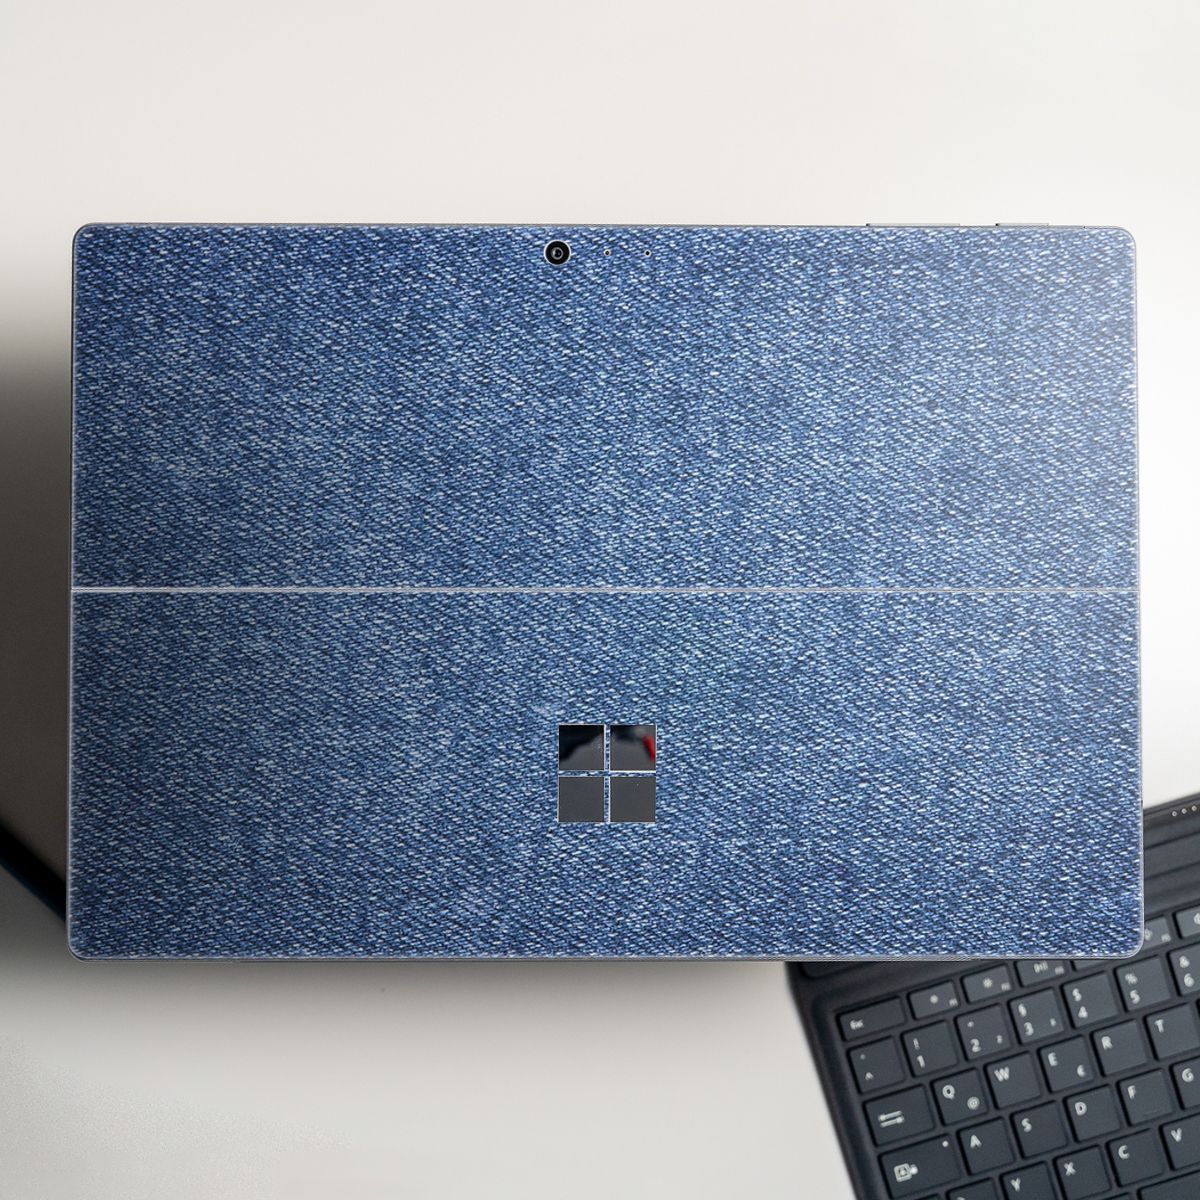 Skin dán hình Hoa văn sticker x36 cho Surface Go, Pro 2, Pro 3, Pro 4, Pro 5, Pro 6, Pro 7, Pro X